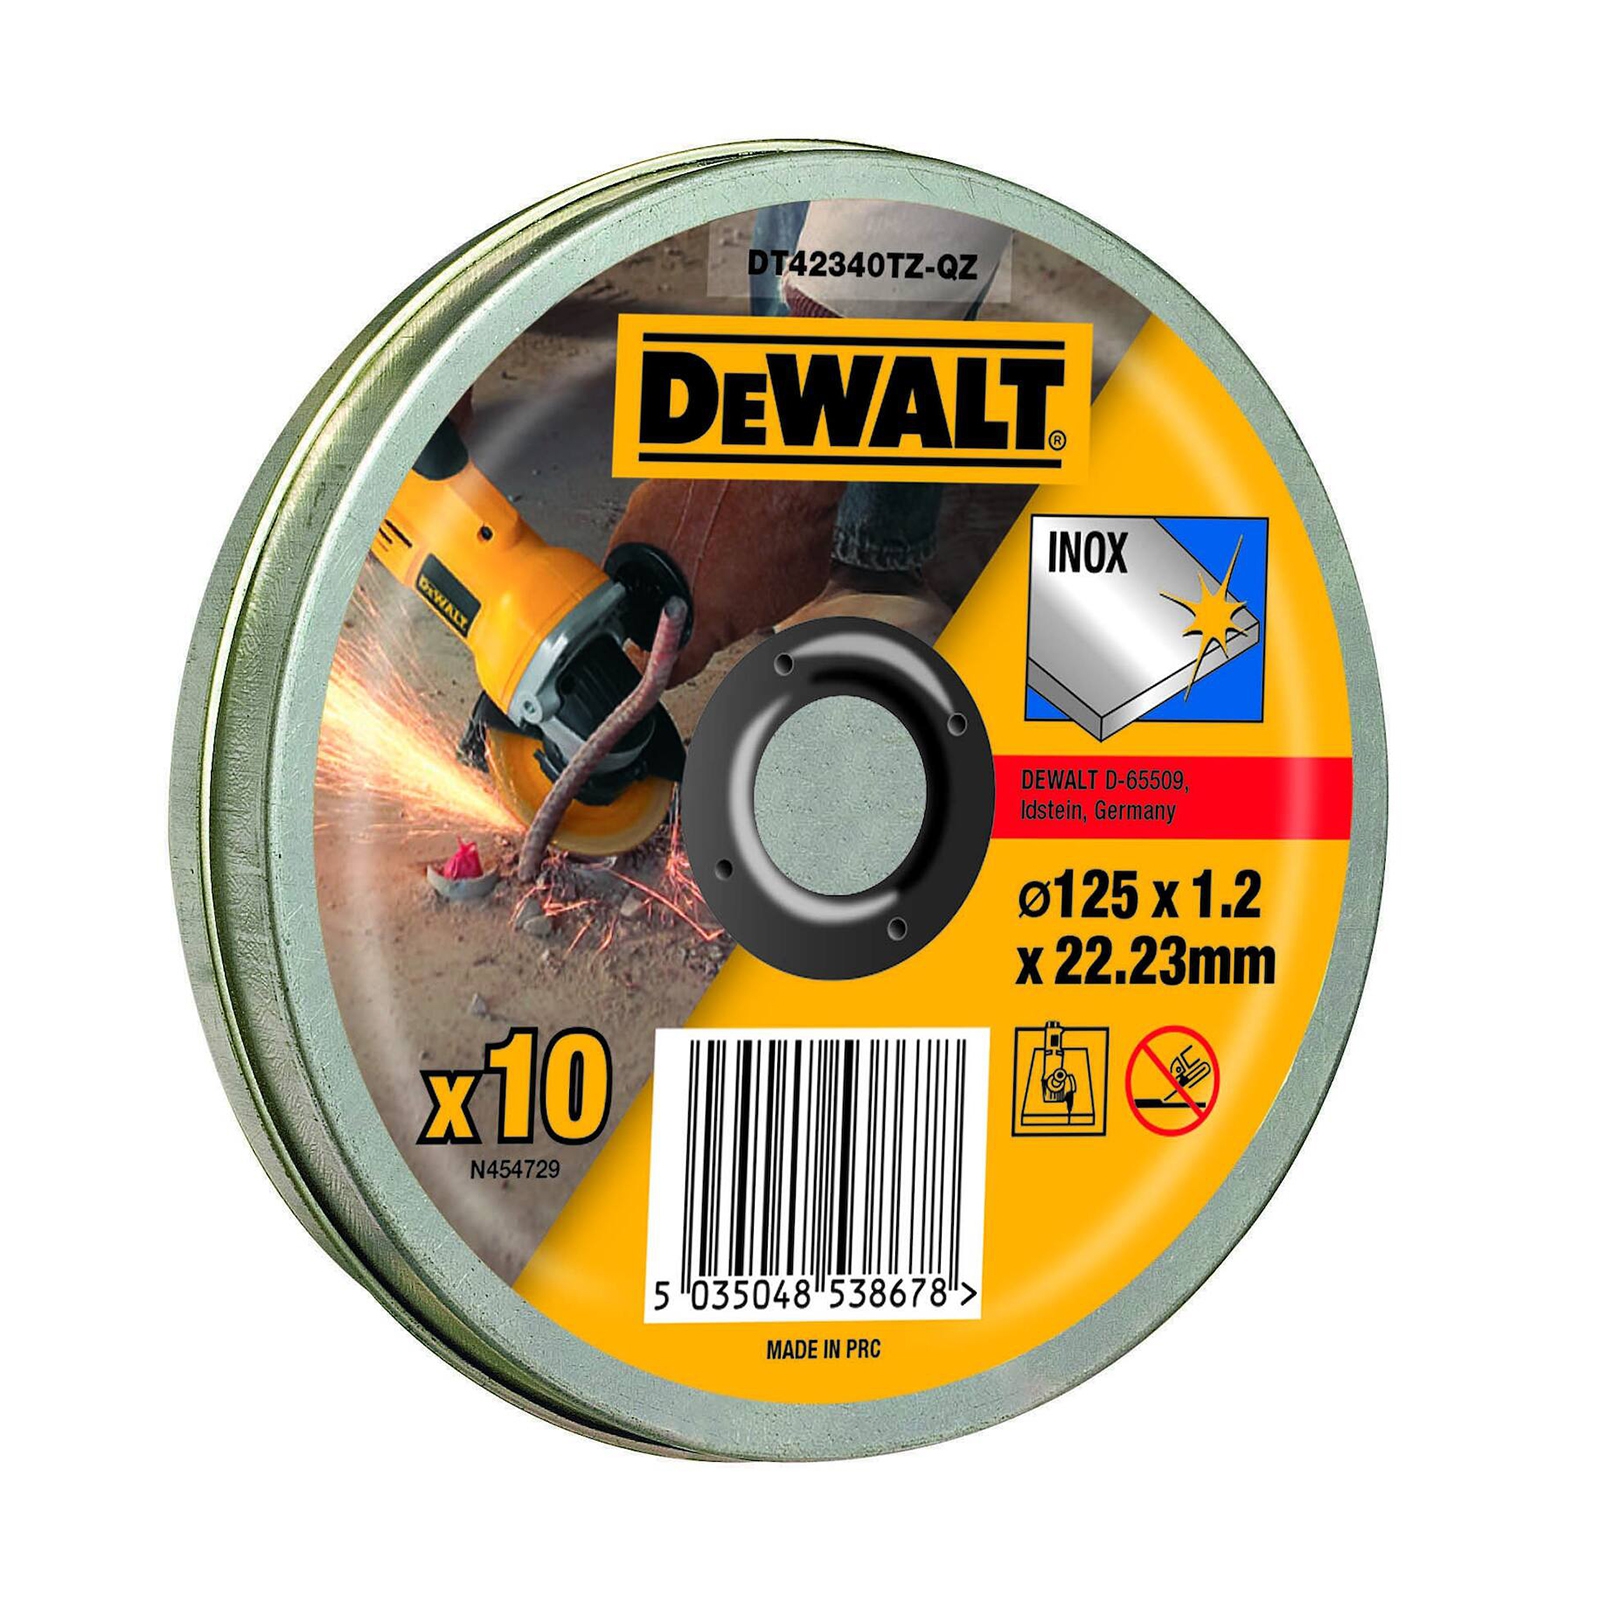 DEWALT DT42340TZ-QZ Trennscheibe 125x1,2x22,23mm